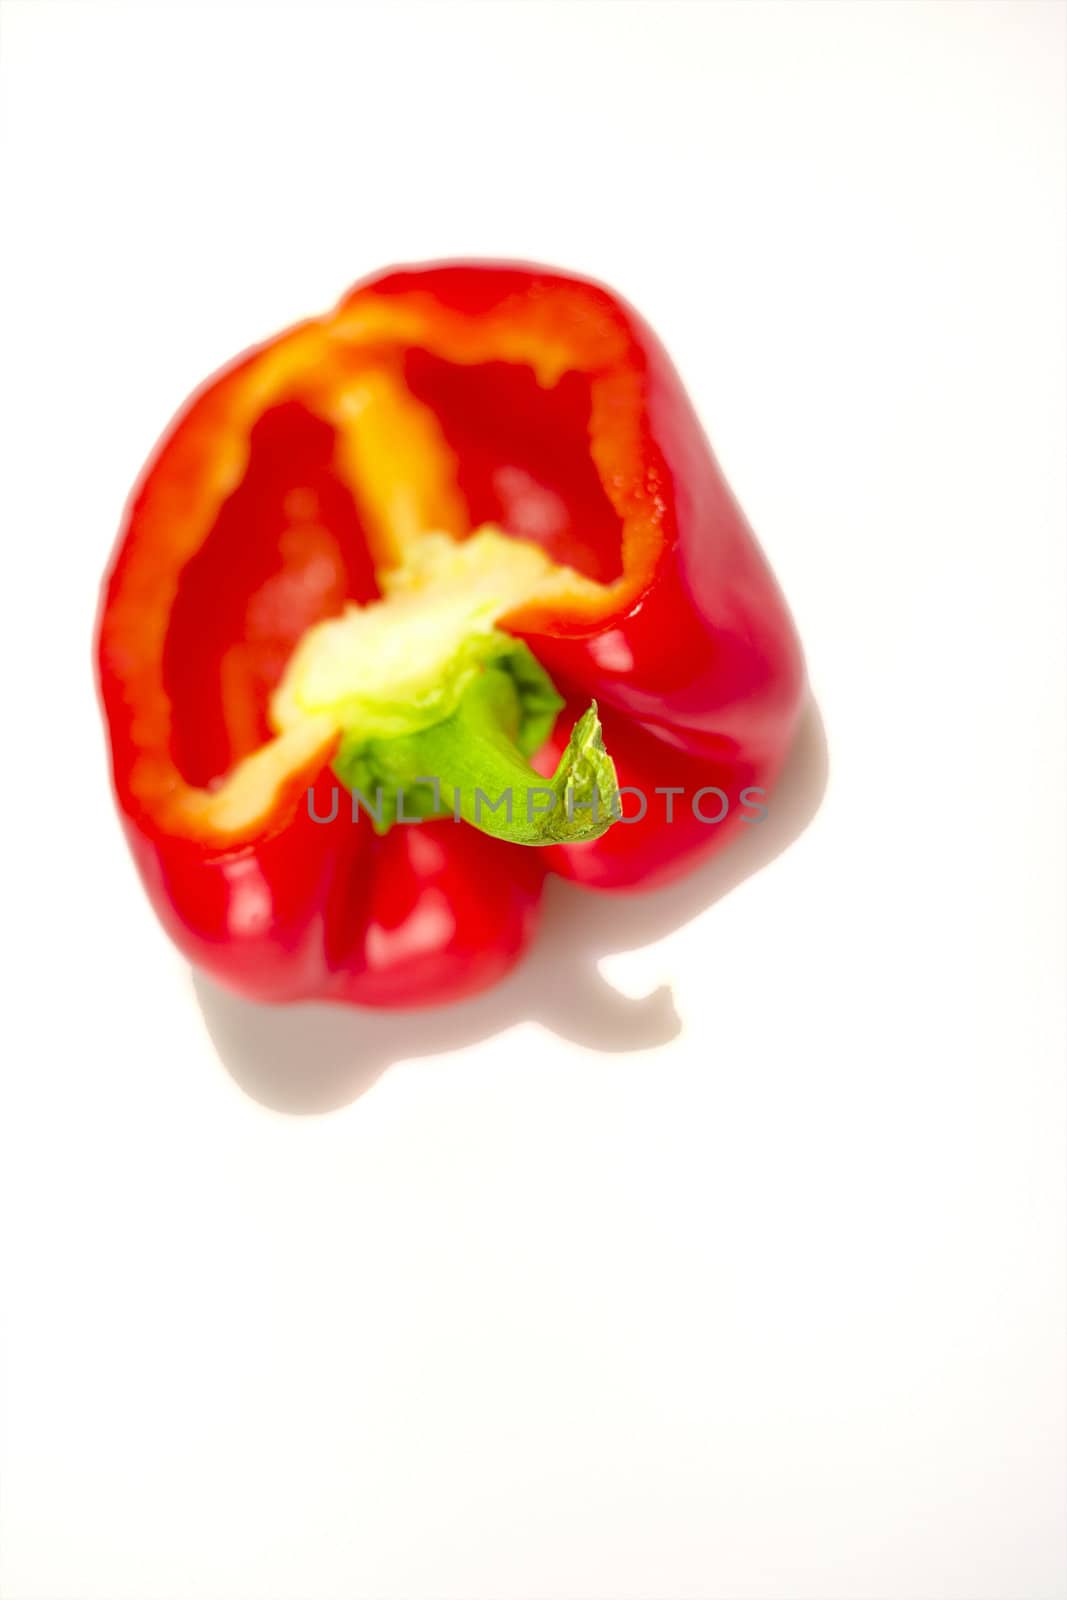 Red pepper by mattvanderlinde